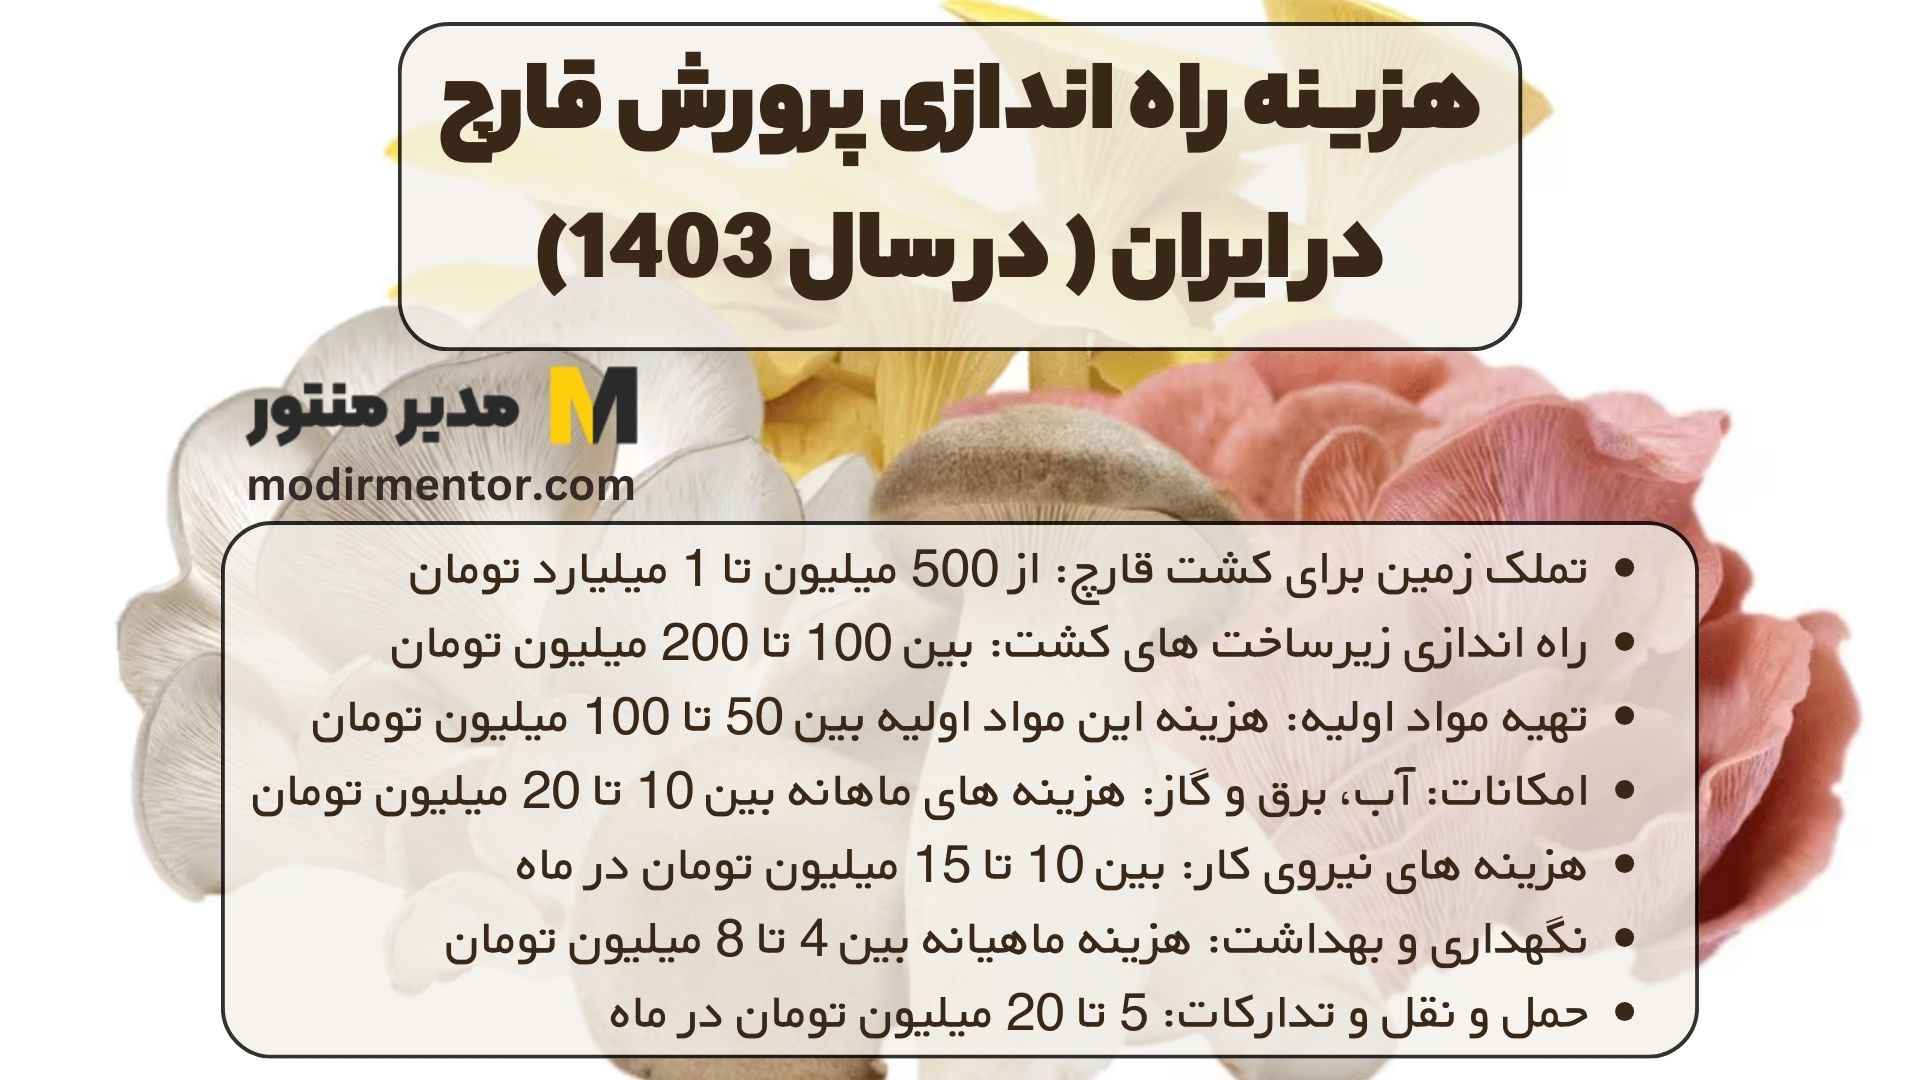 هزینه راه اندازی پرورش قارچ در ایران ( در سال 1403)